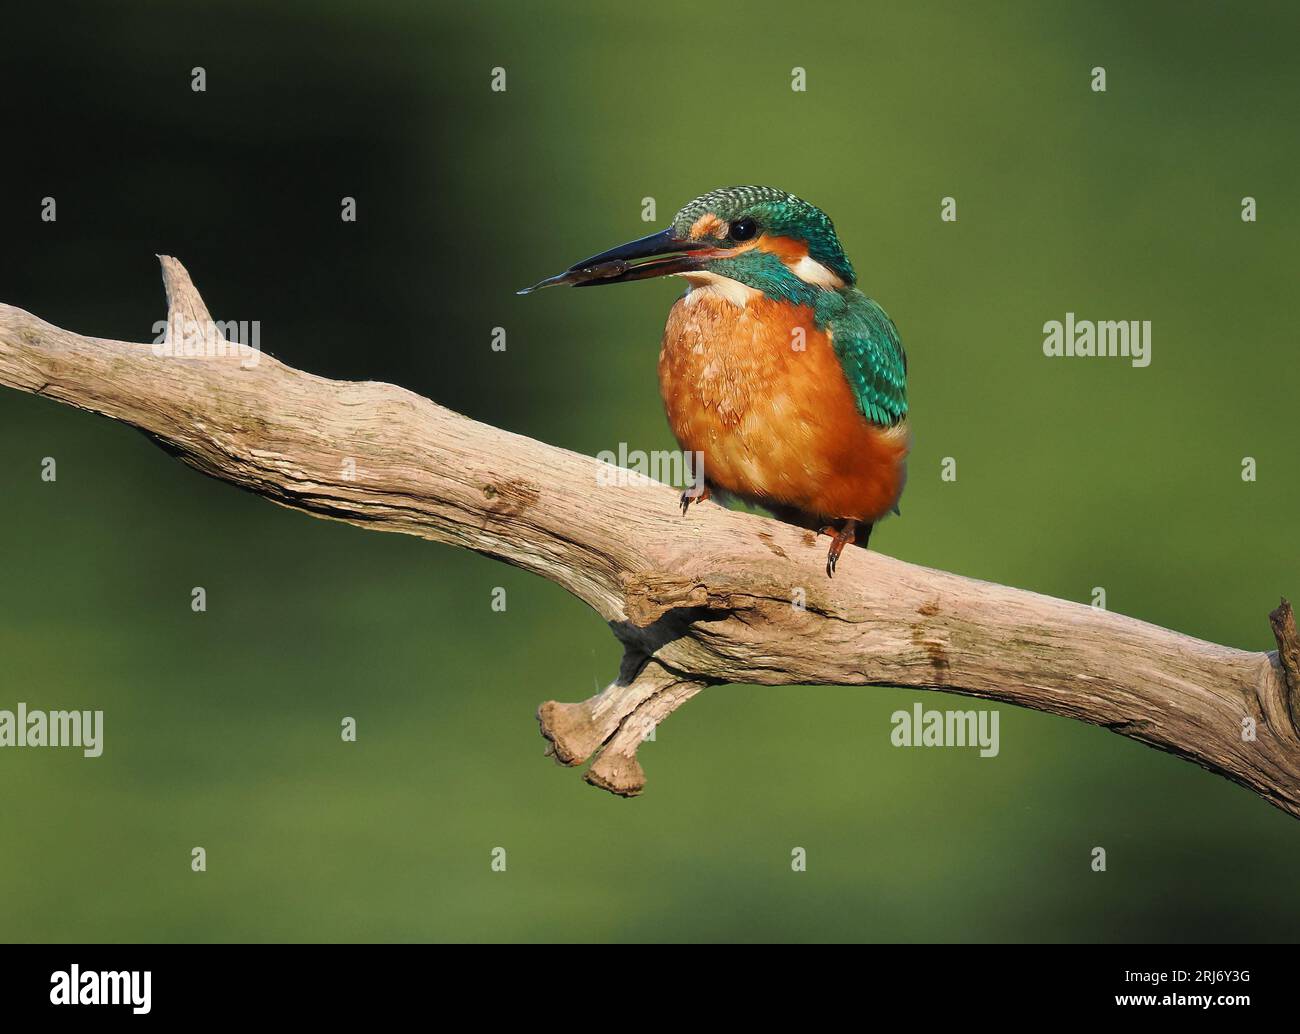 Kingfisher schaut sich gerne Barsche auf ihrem Territorium an, so dass Sie durch regelmäßiges Wechseln die Landungen erhöhen können. Stockfoto